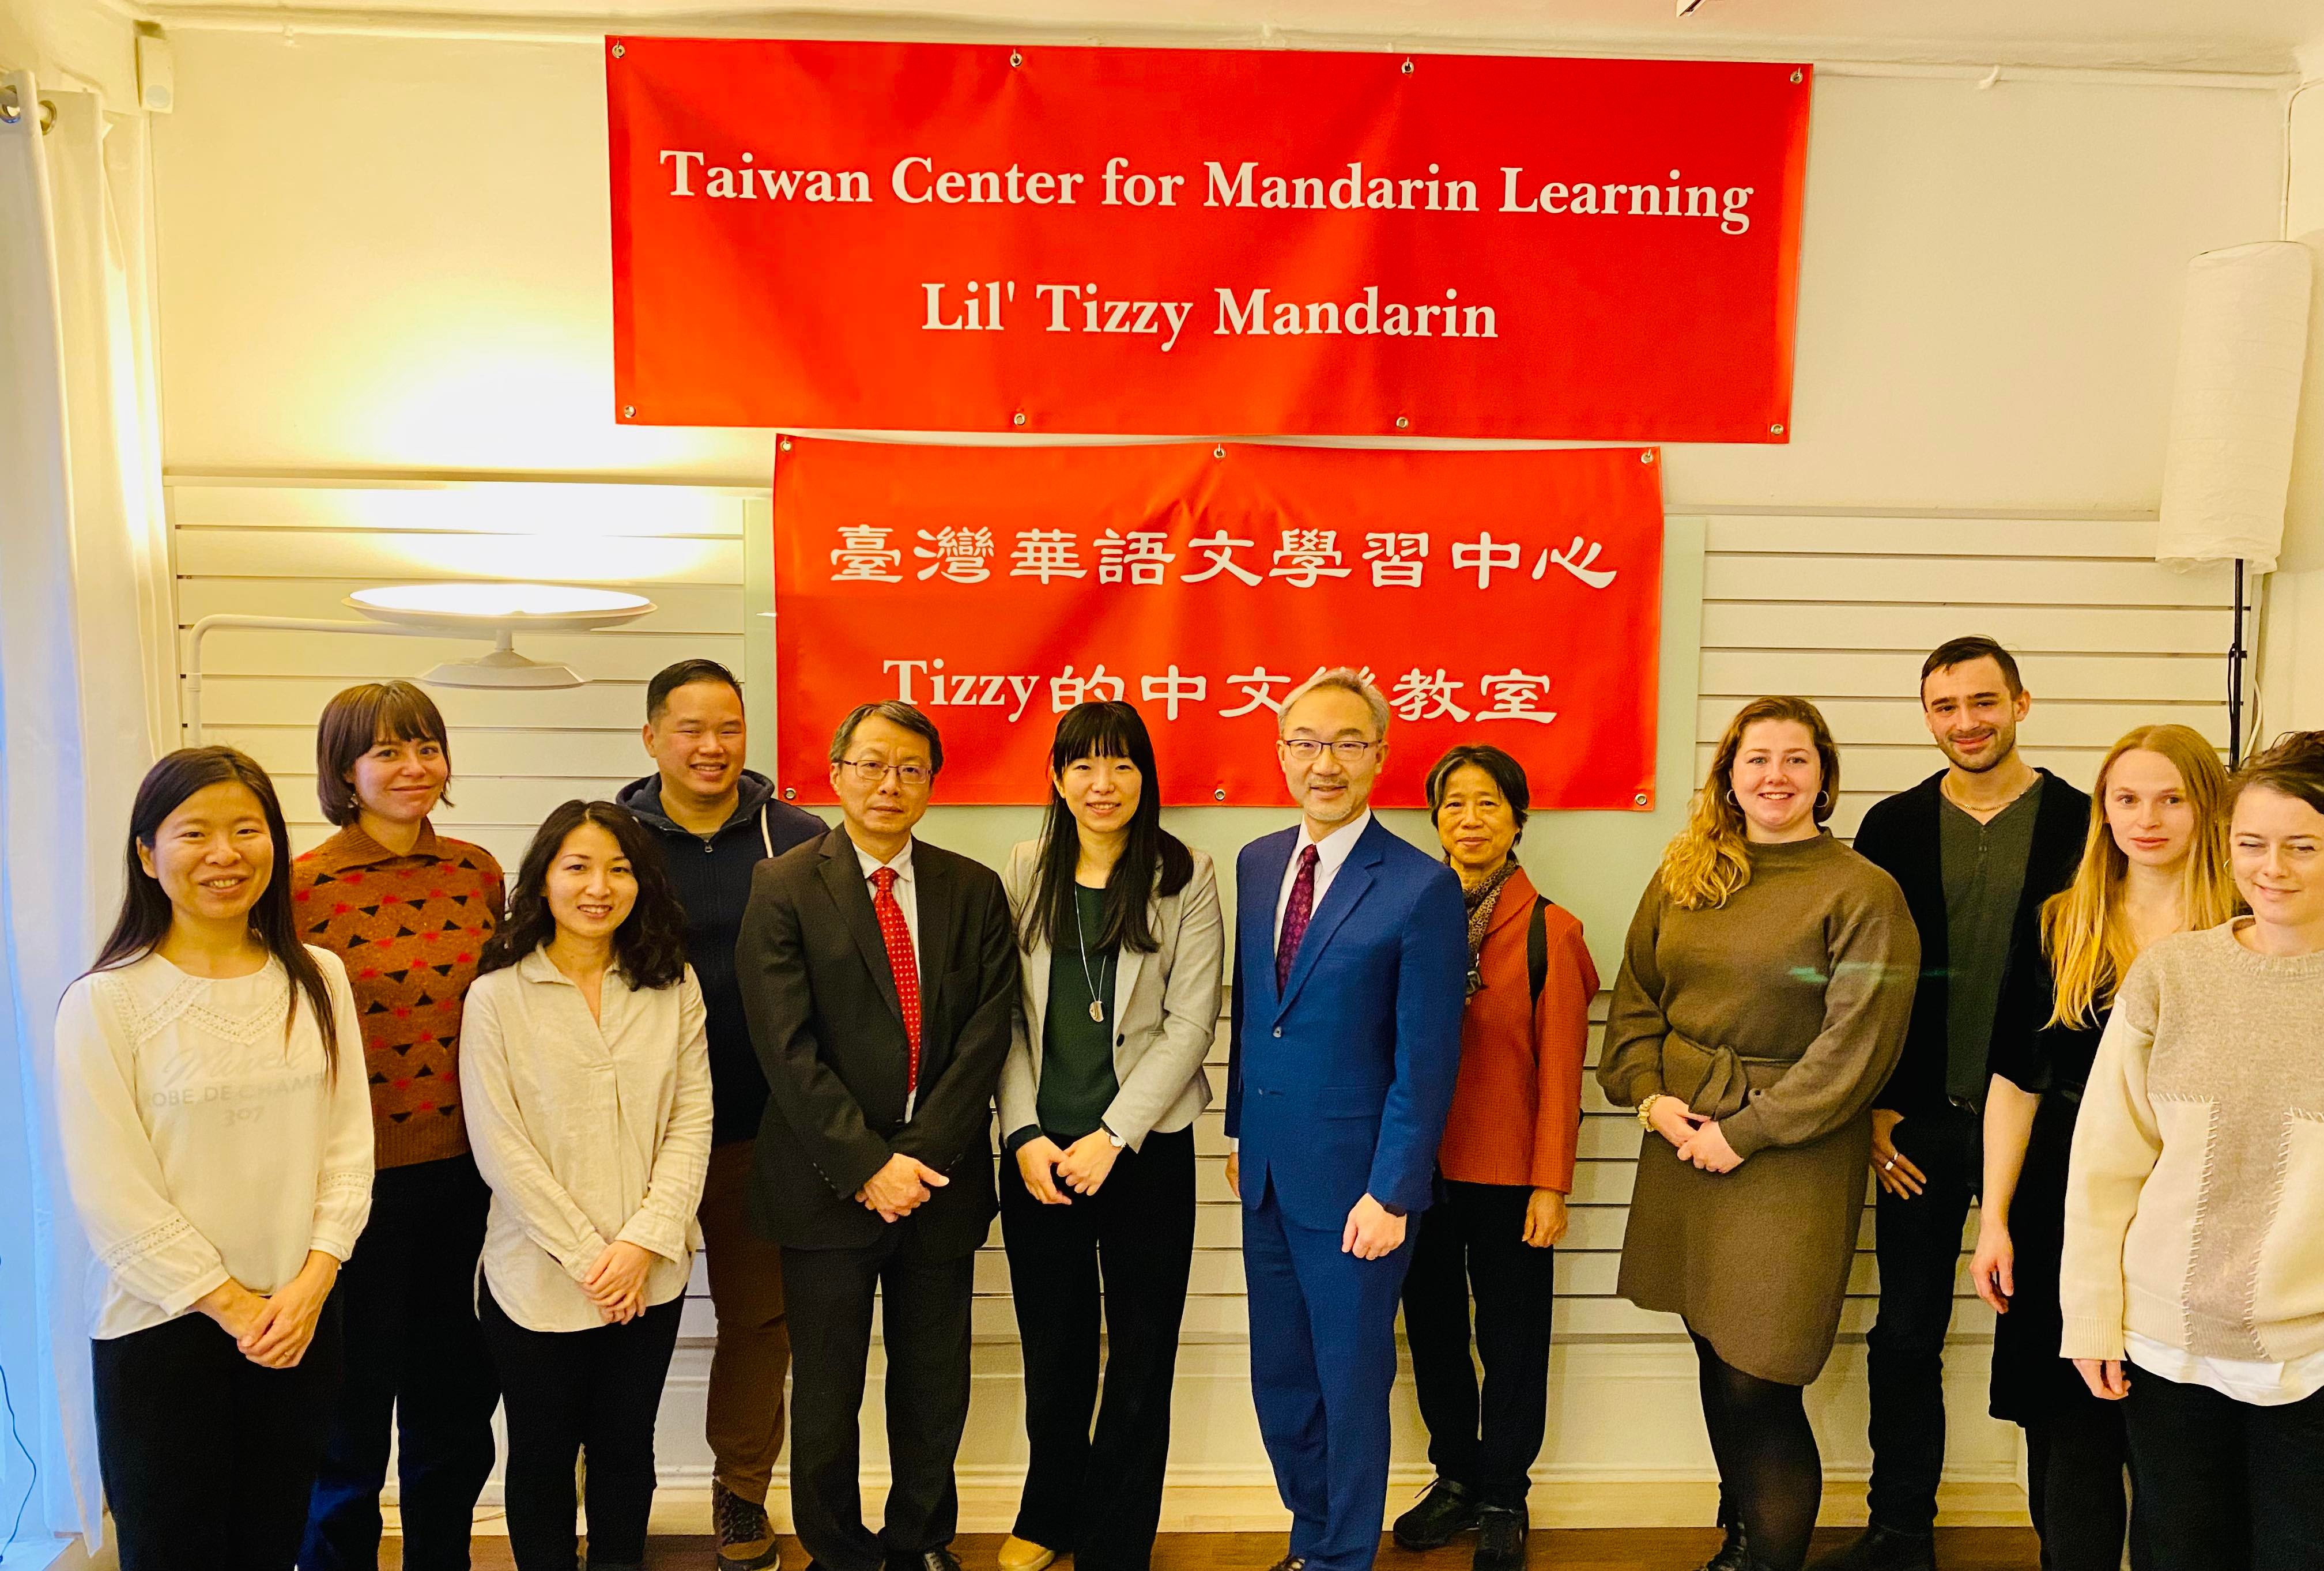 駐瑞典代表處姚金祥大使視察並出席臺灣華語文學習中心開幕活動